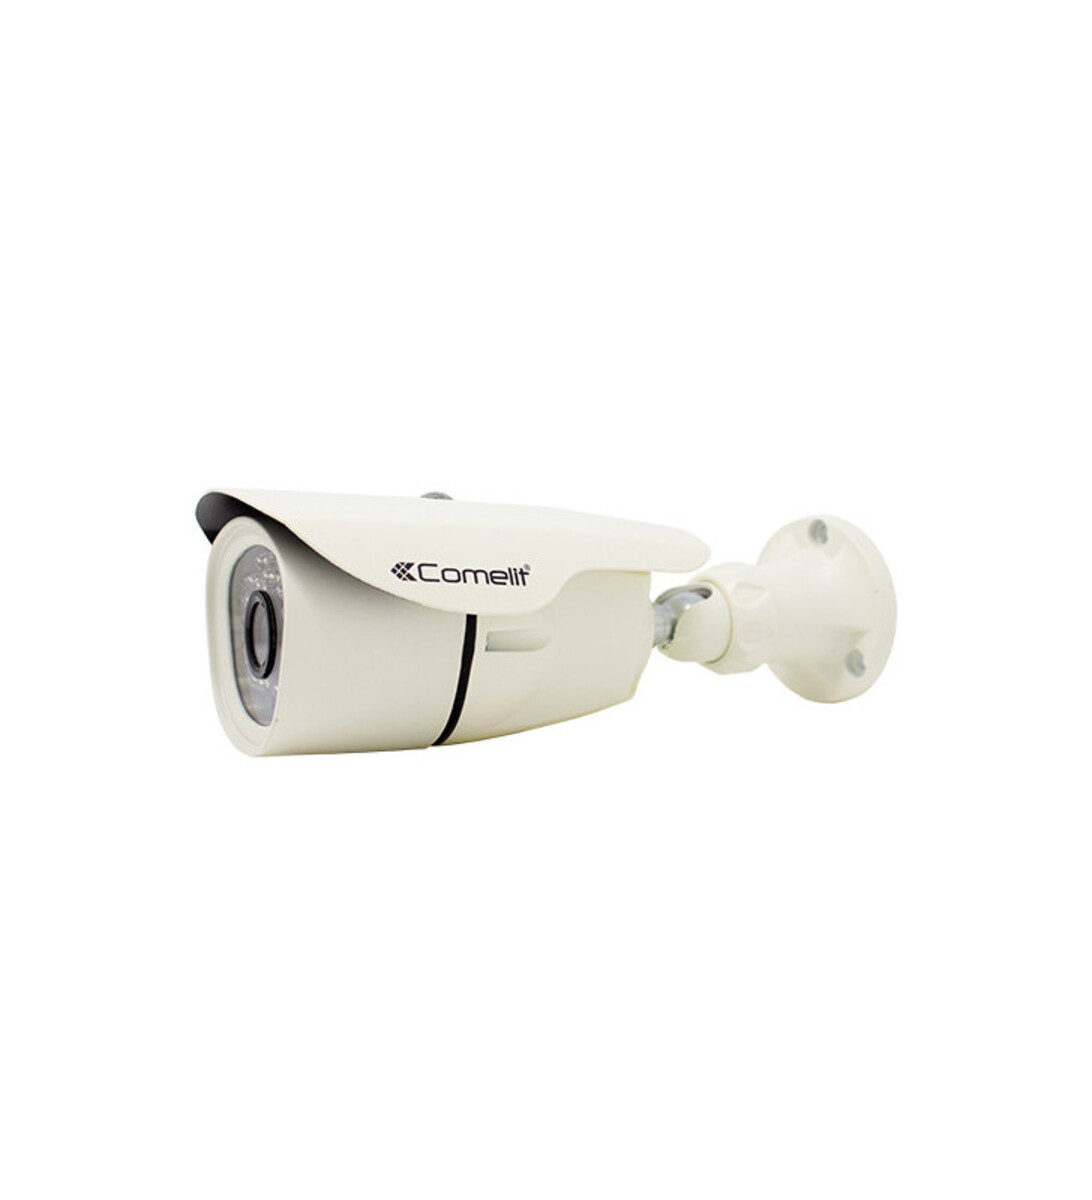 Caméra ip ahd numérique de vidéosurveillance - optique 3.6 mm - ipcam010c - comelit